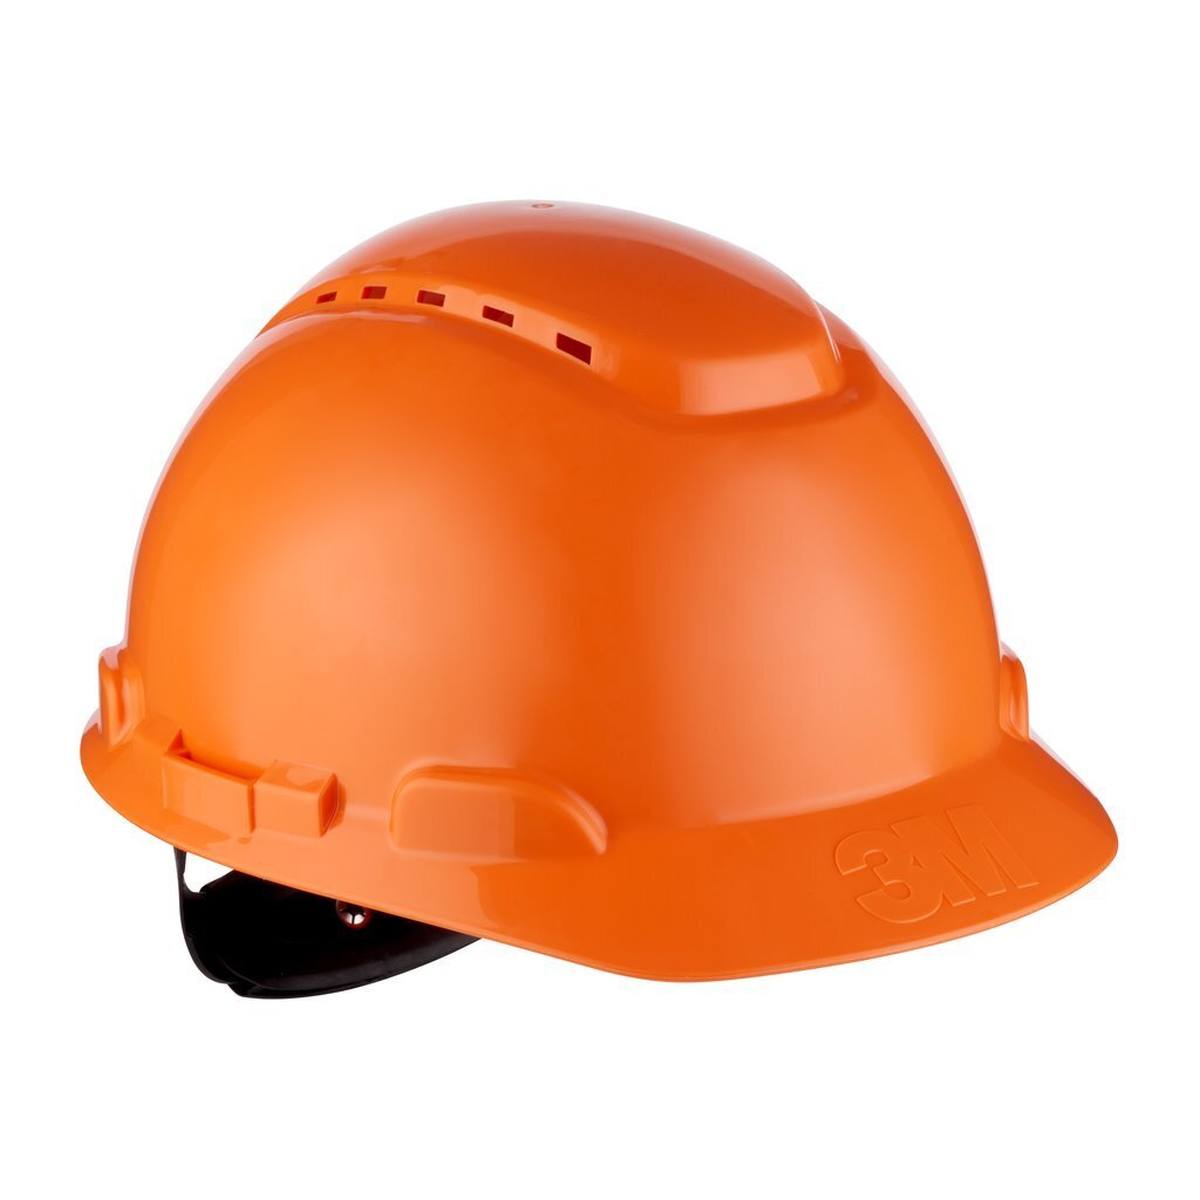 elmetto di sicurezza 3M serie H700 H-700N-OR in arancione, ventilato, con cricchetto e cinturino in plastica per saldatura